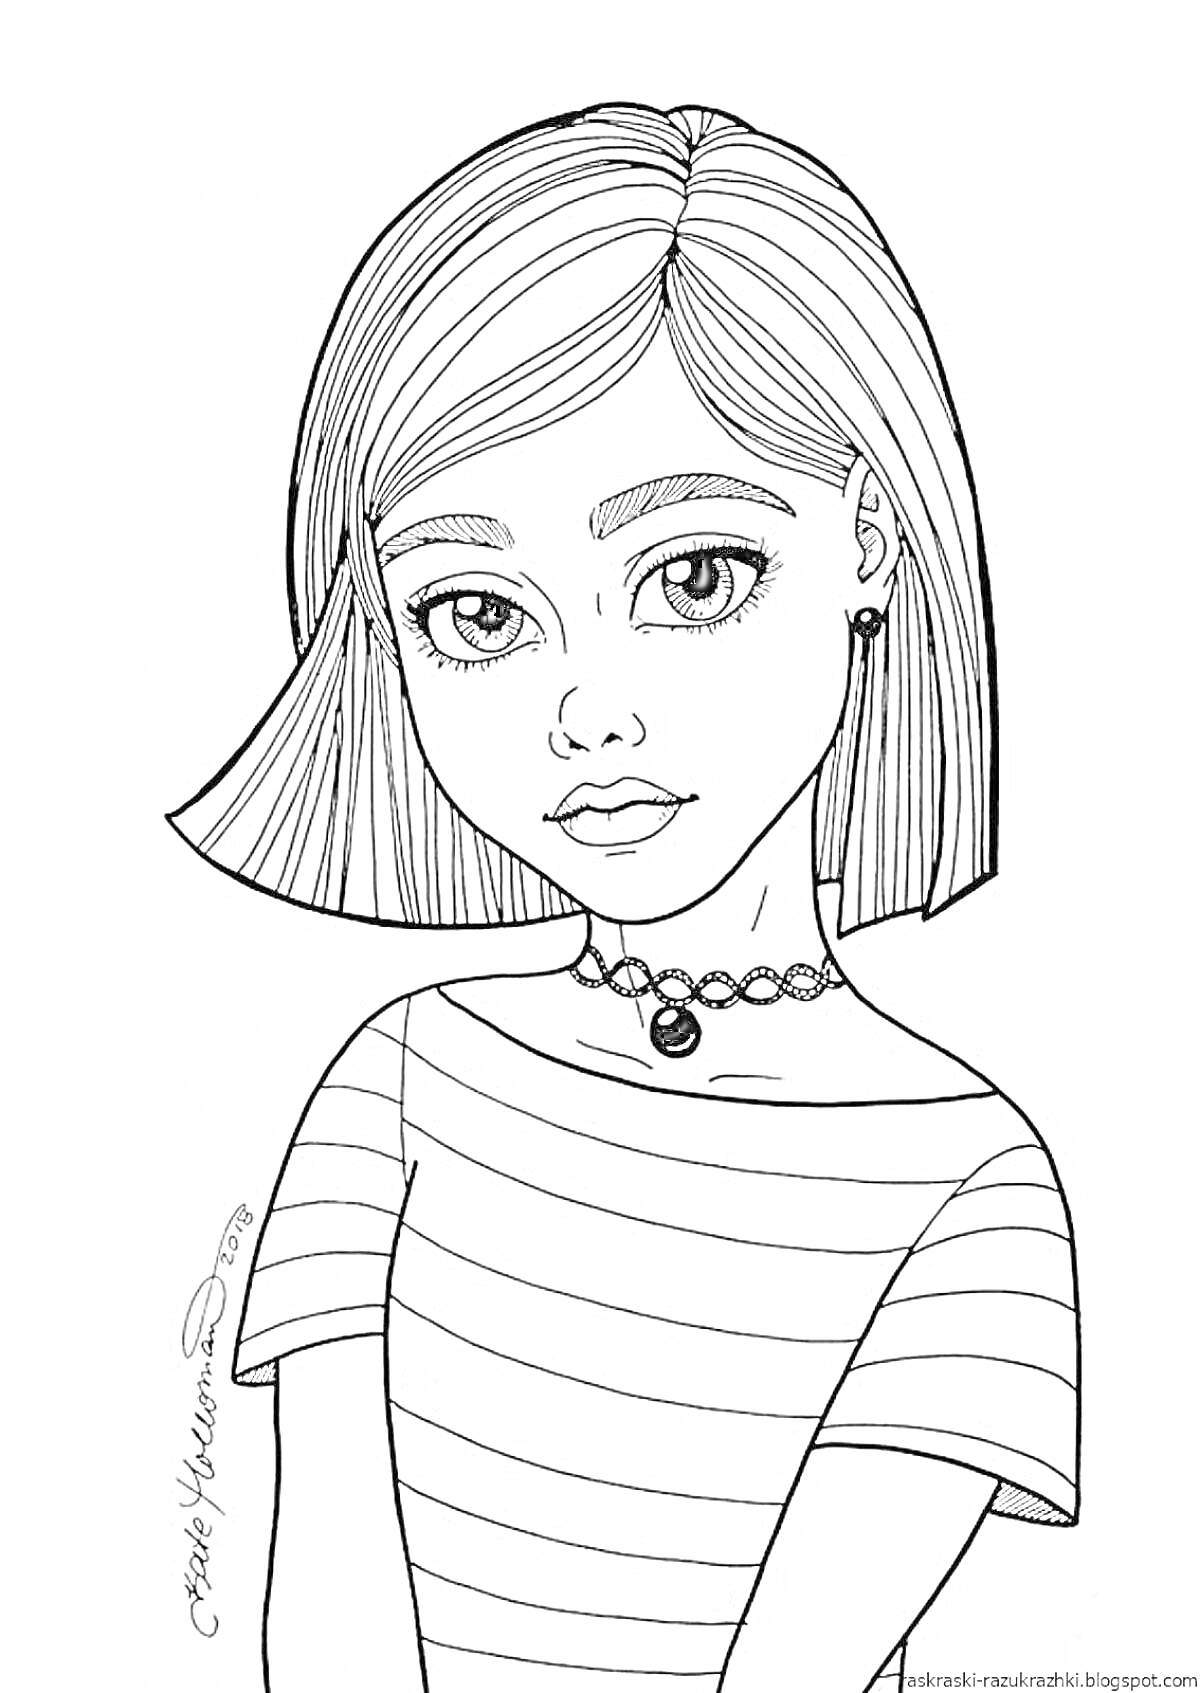 Девочка с короткими волосами в полосатой футболке и чокером.